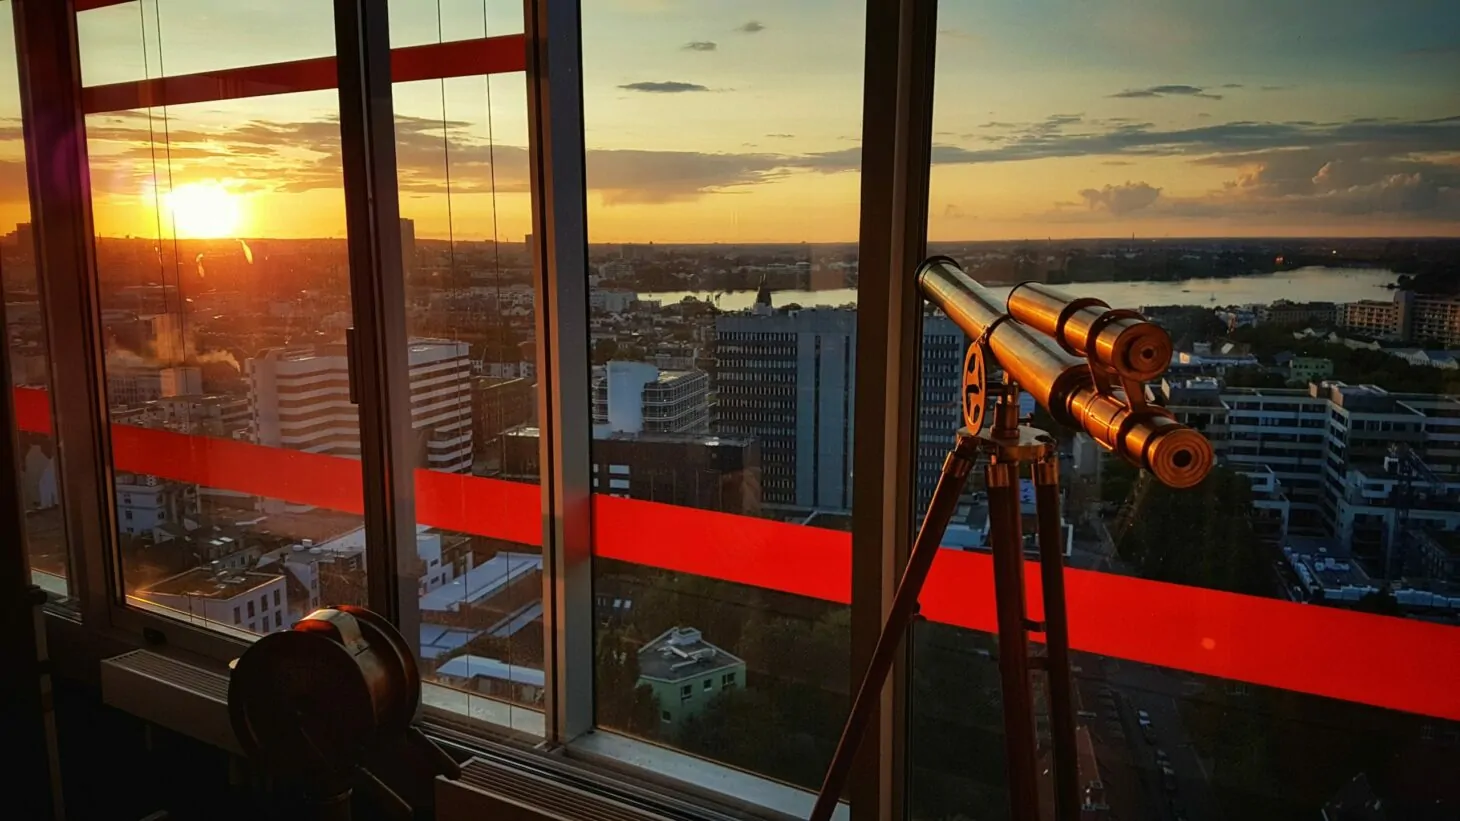 View of the sunset, valantic Business Analytics Hamburg branch